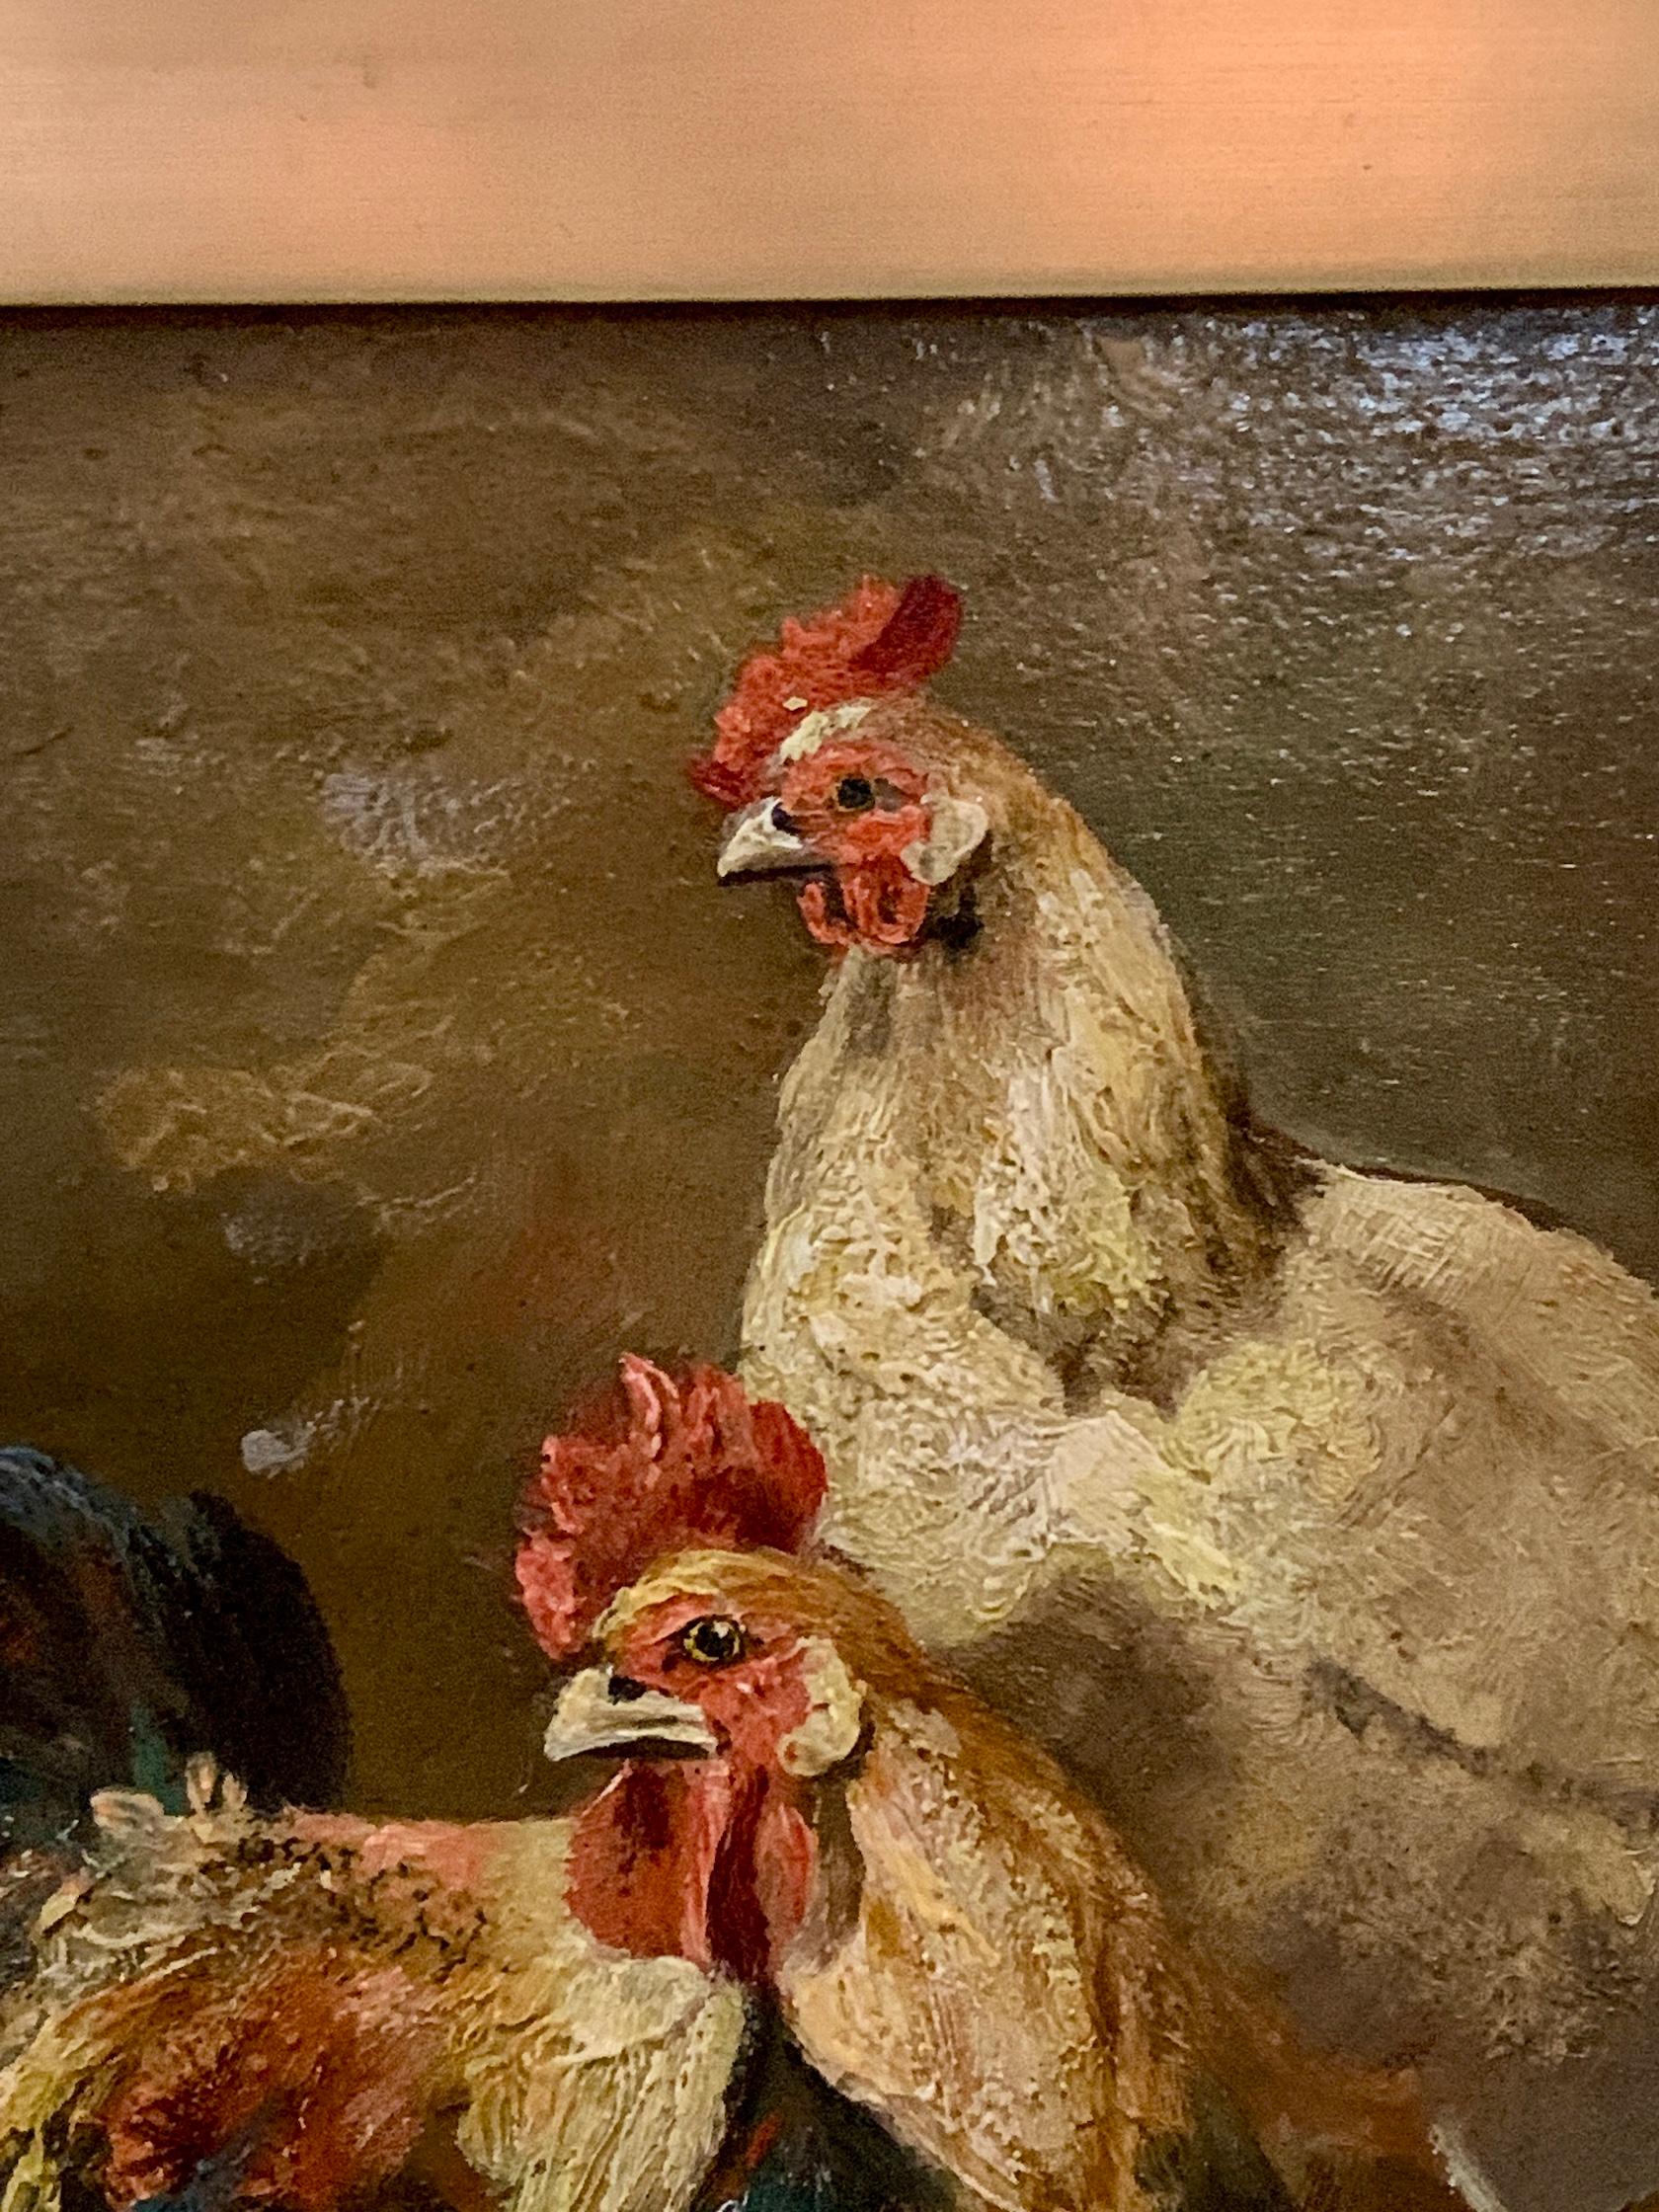 Poulets dans une grange ou un poulailler à l'intérieur d'un bâtiment.

Charles-Émile Jacques (23 mai 1813 - 7 mai 1894) est un peintre animalier et graveur français qui fait partie, avec Jean-François Millet, de l'école de Barbizon. Il a appris à